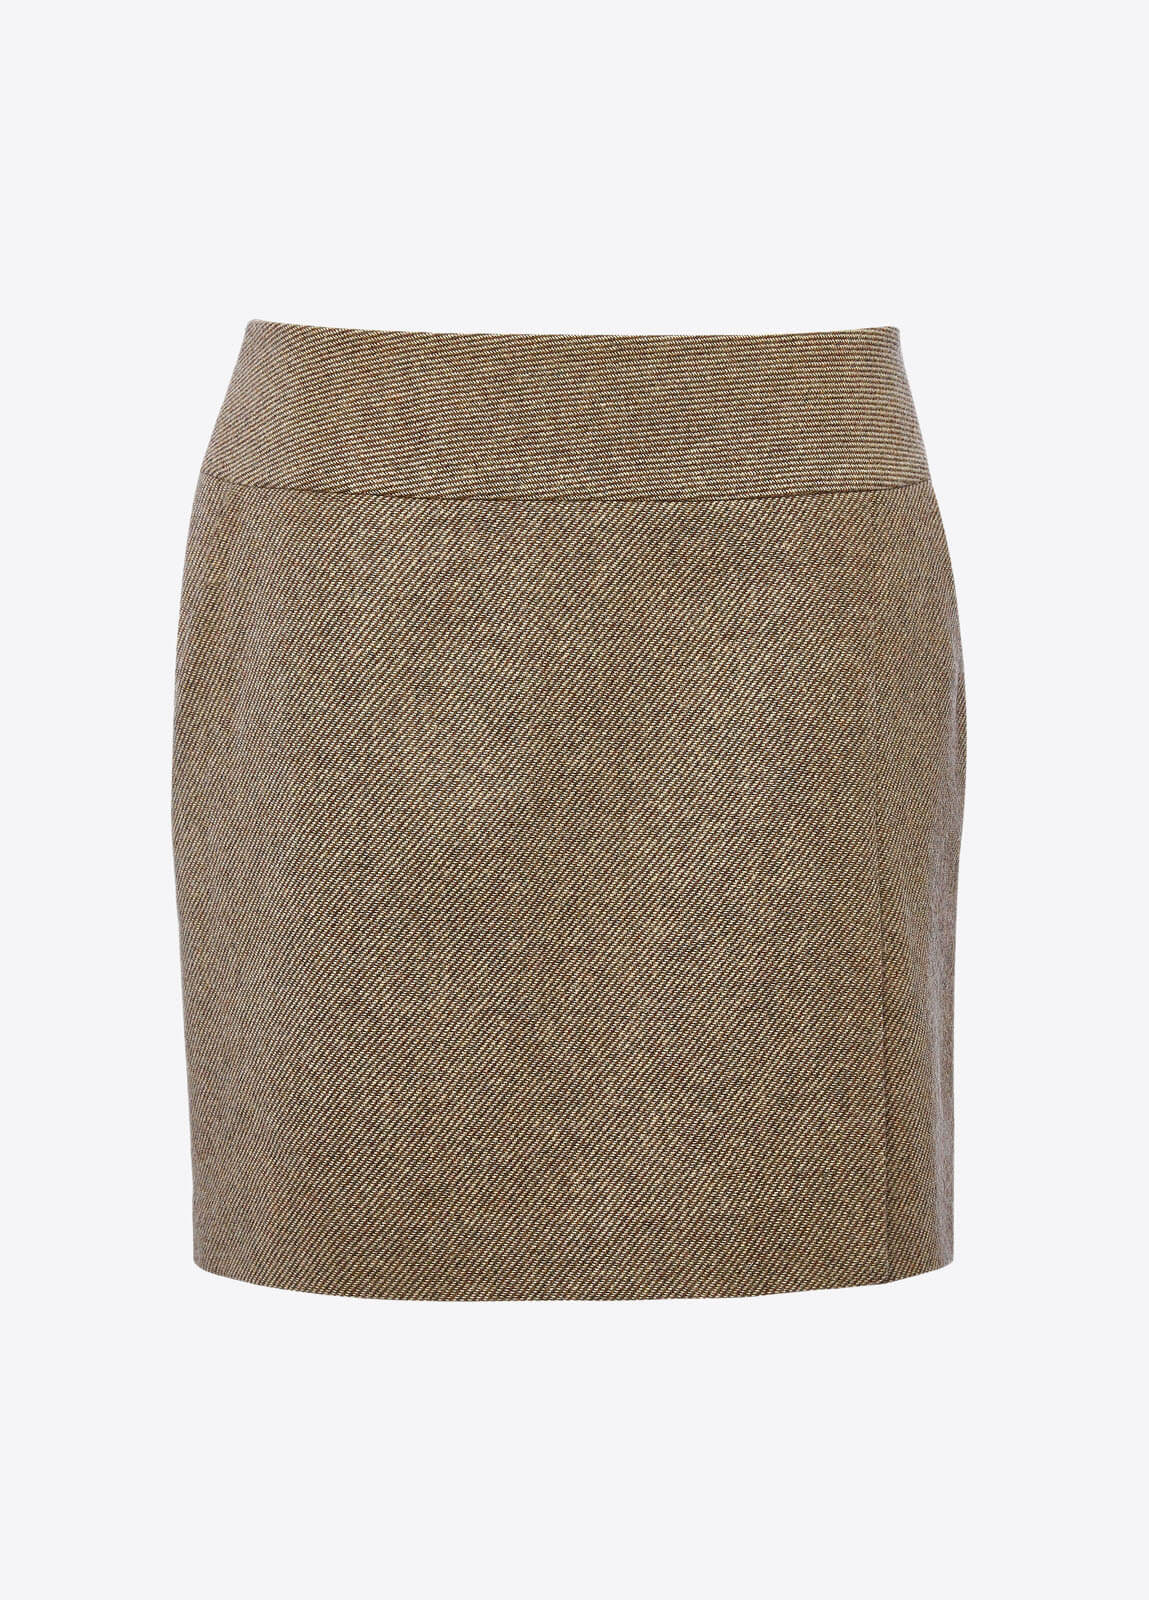 Bellflower Tweed Skirt - Sable